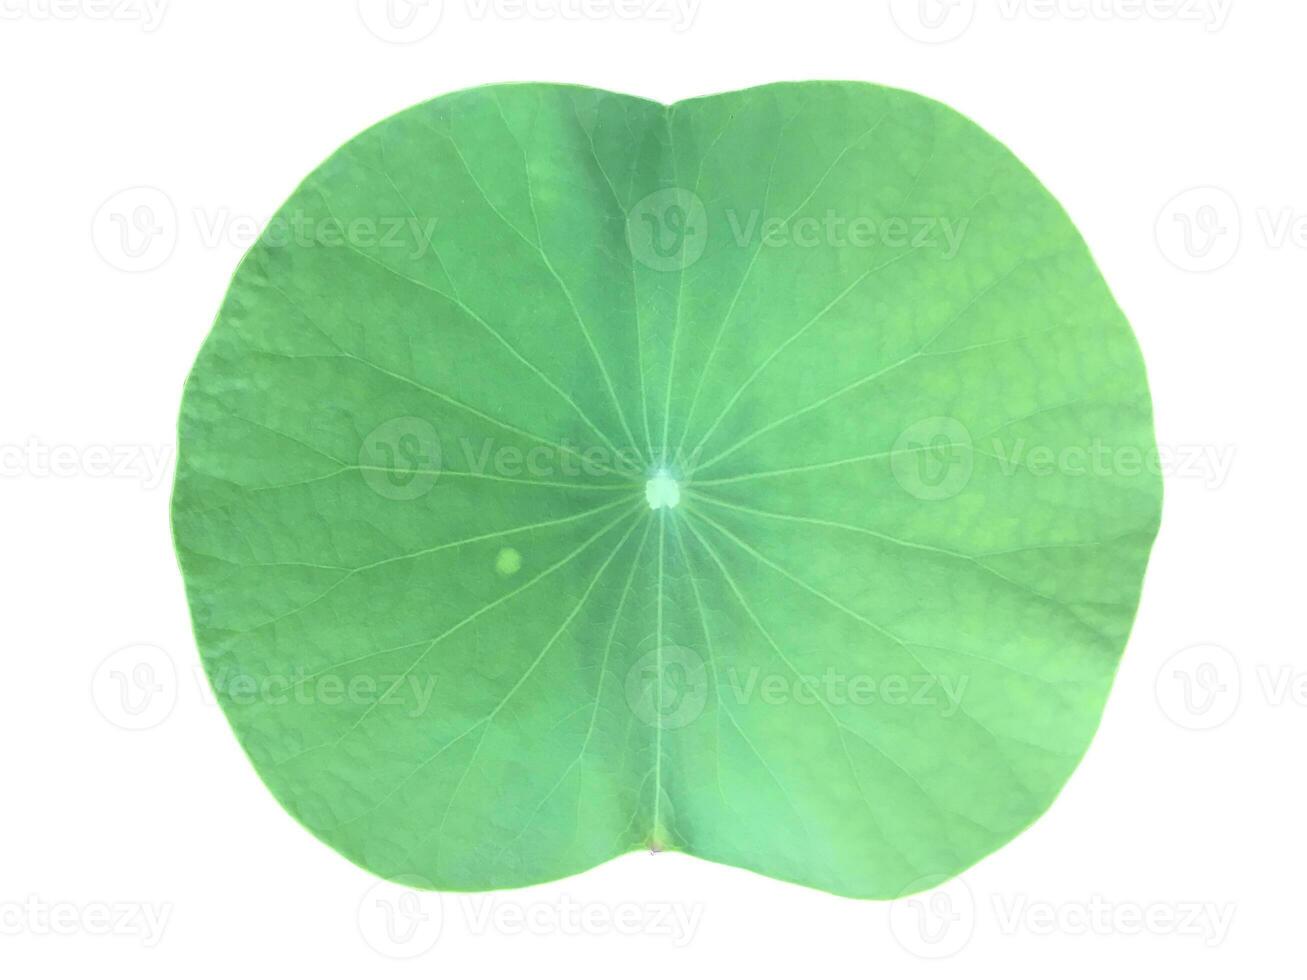 jong Waterlelie of lotus blad geïsoleerd Aan wit achtergrond met knipsel paden. foto